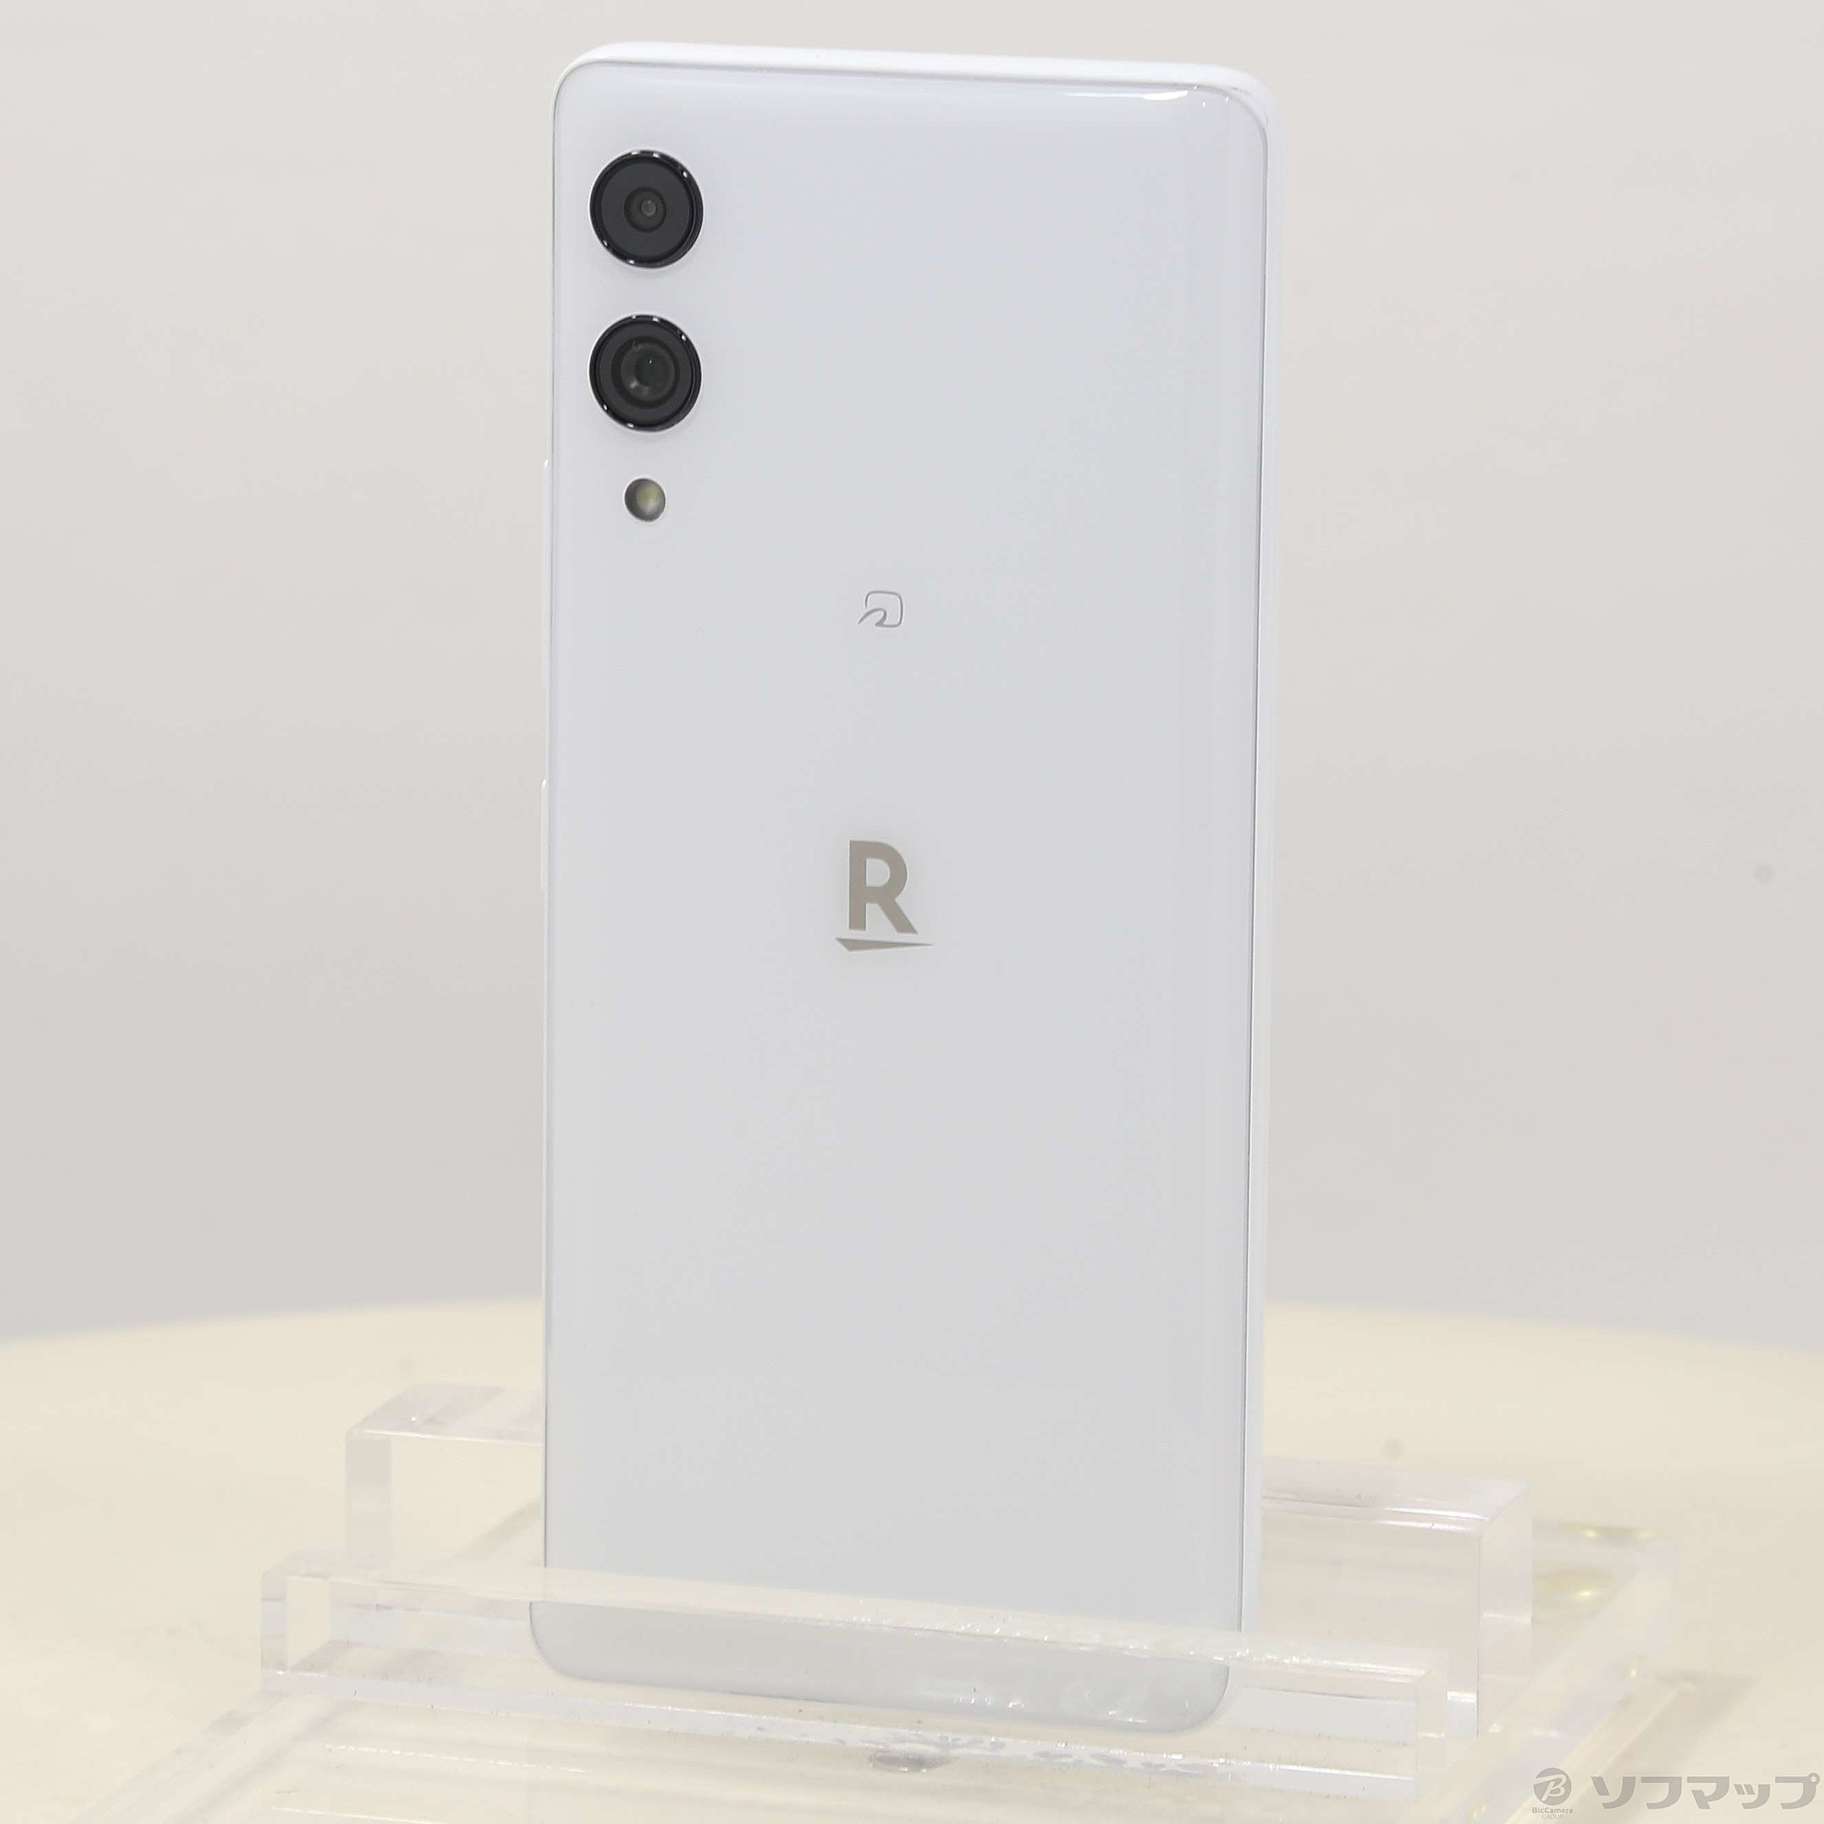 Rakuten Hand 5G ホワイト 128 GB その他 - スマートフォン本体